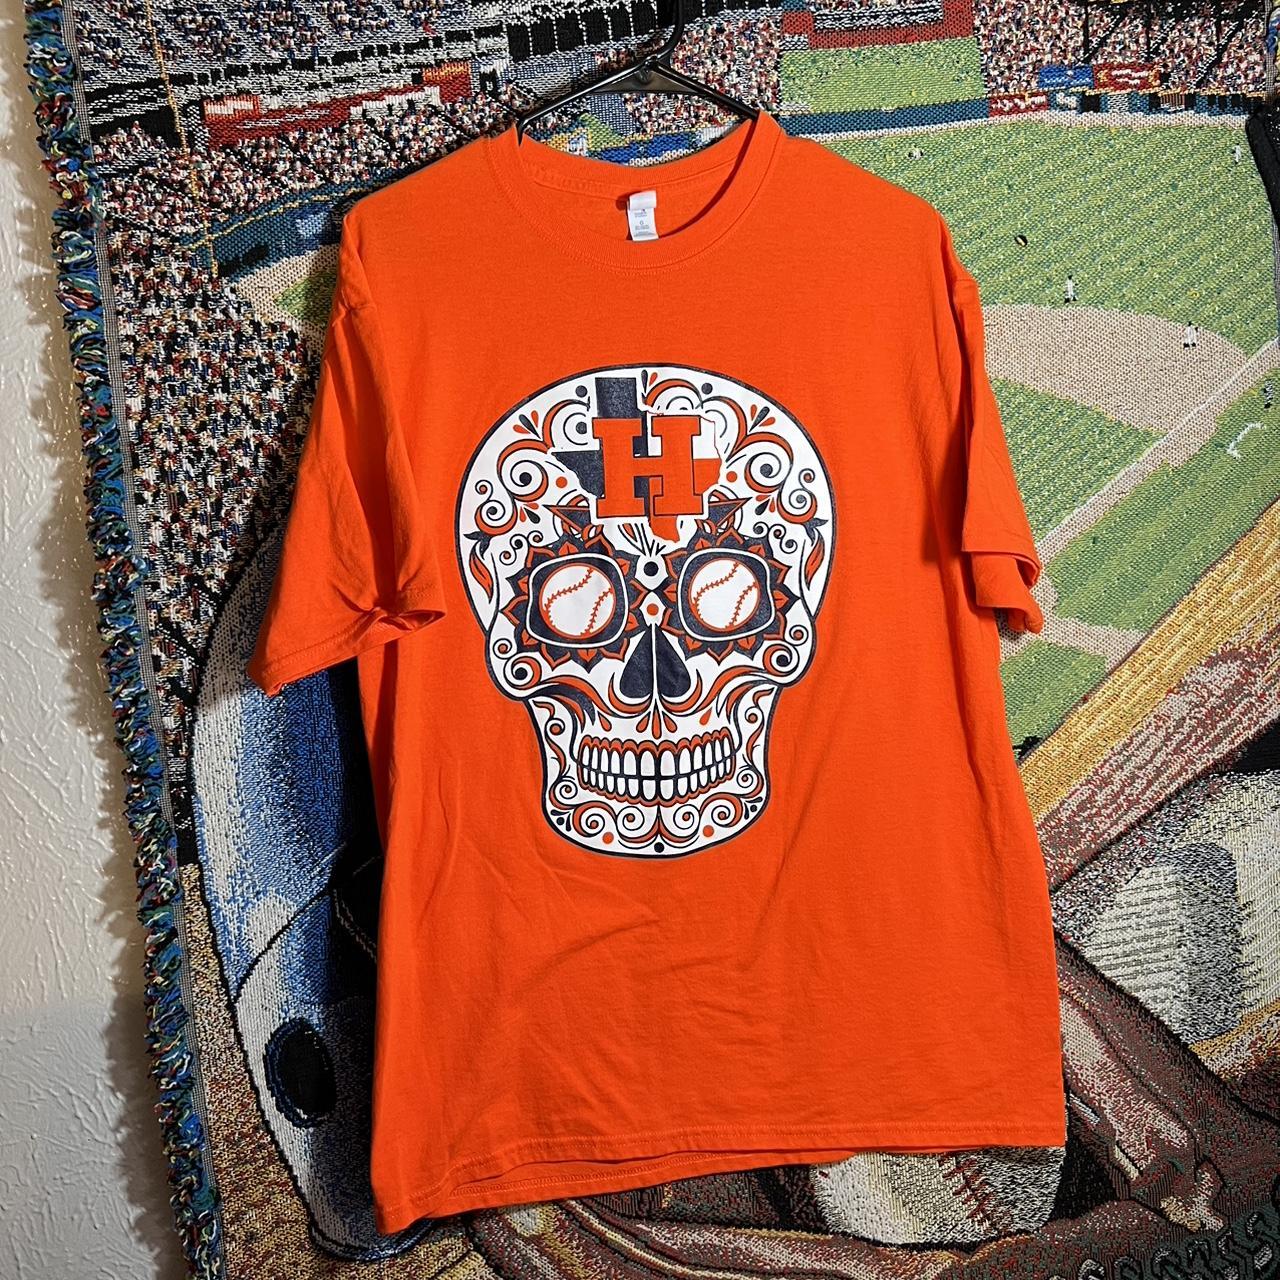 Houston Astros Sugar Skull Dia De Los Astros shirt, hoodie